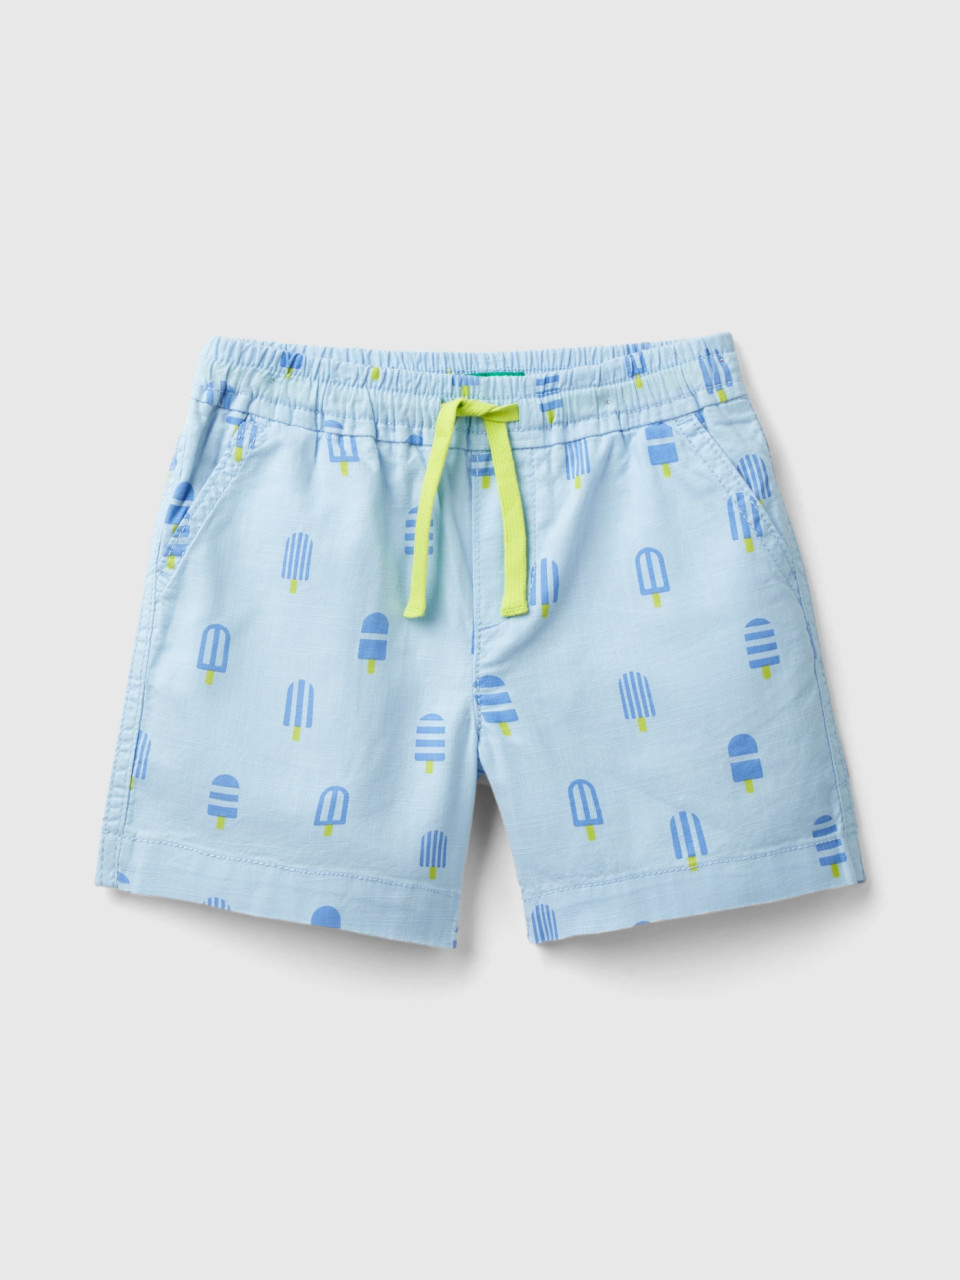 Benetton, Shorts Mit Eiscreme-aufdruck, Blassblau, male